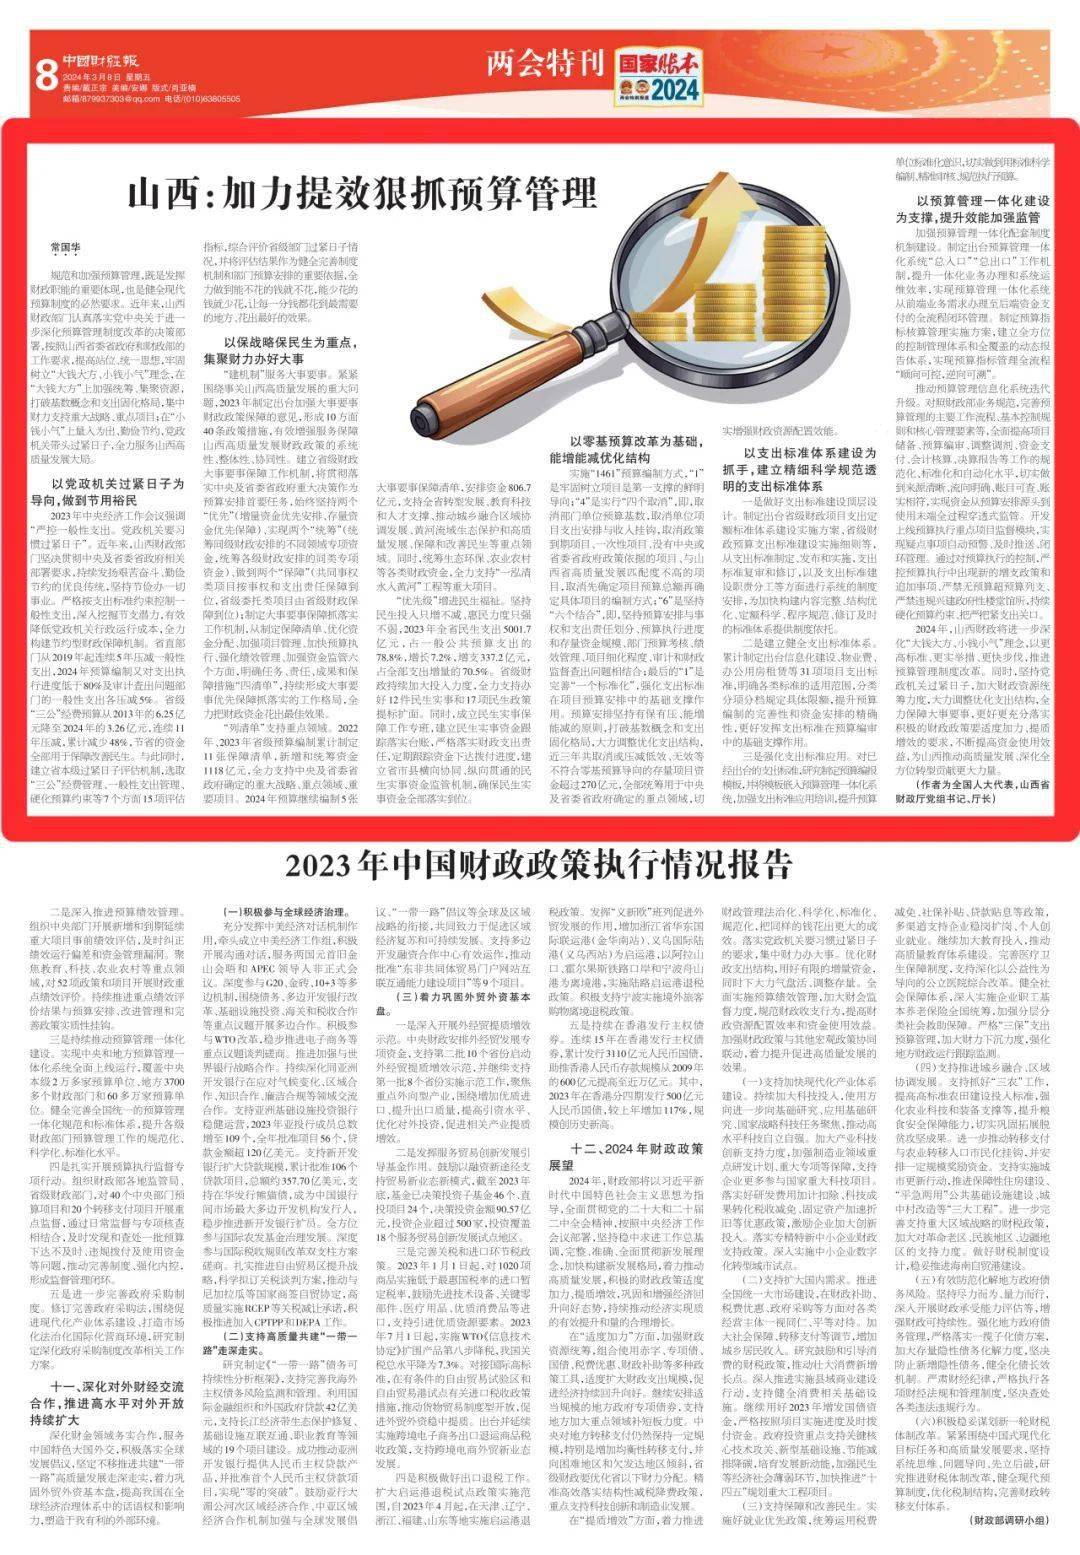 中国财经报新闻客户端中国财经新闻每日财经报道最新